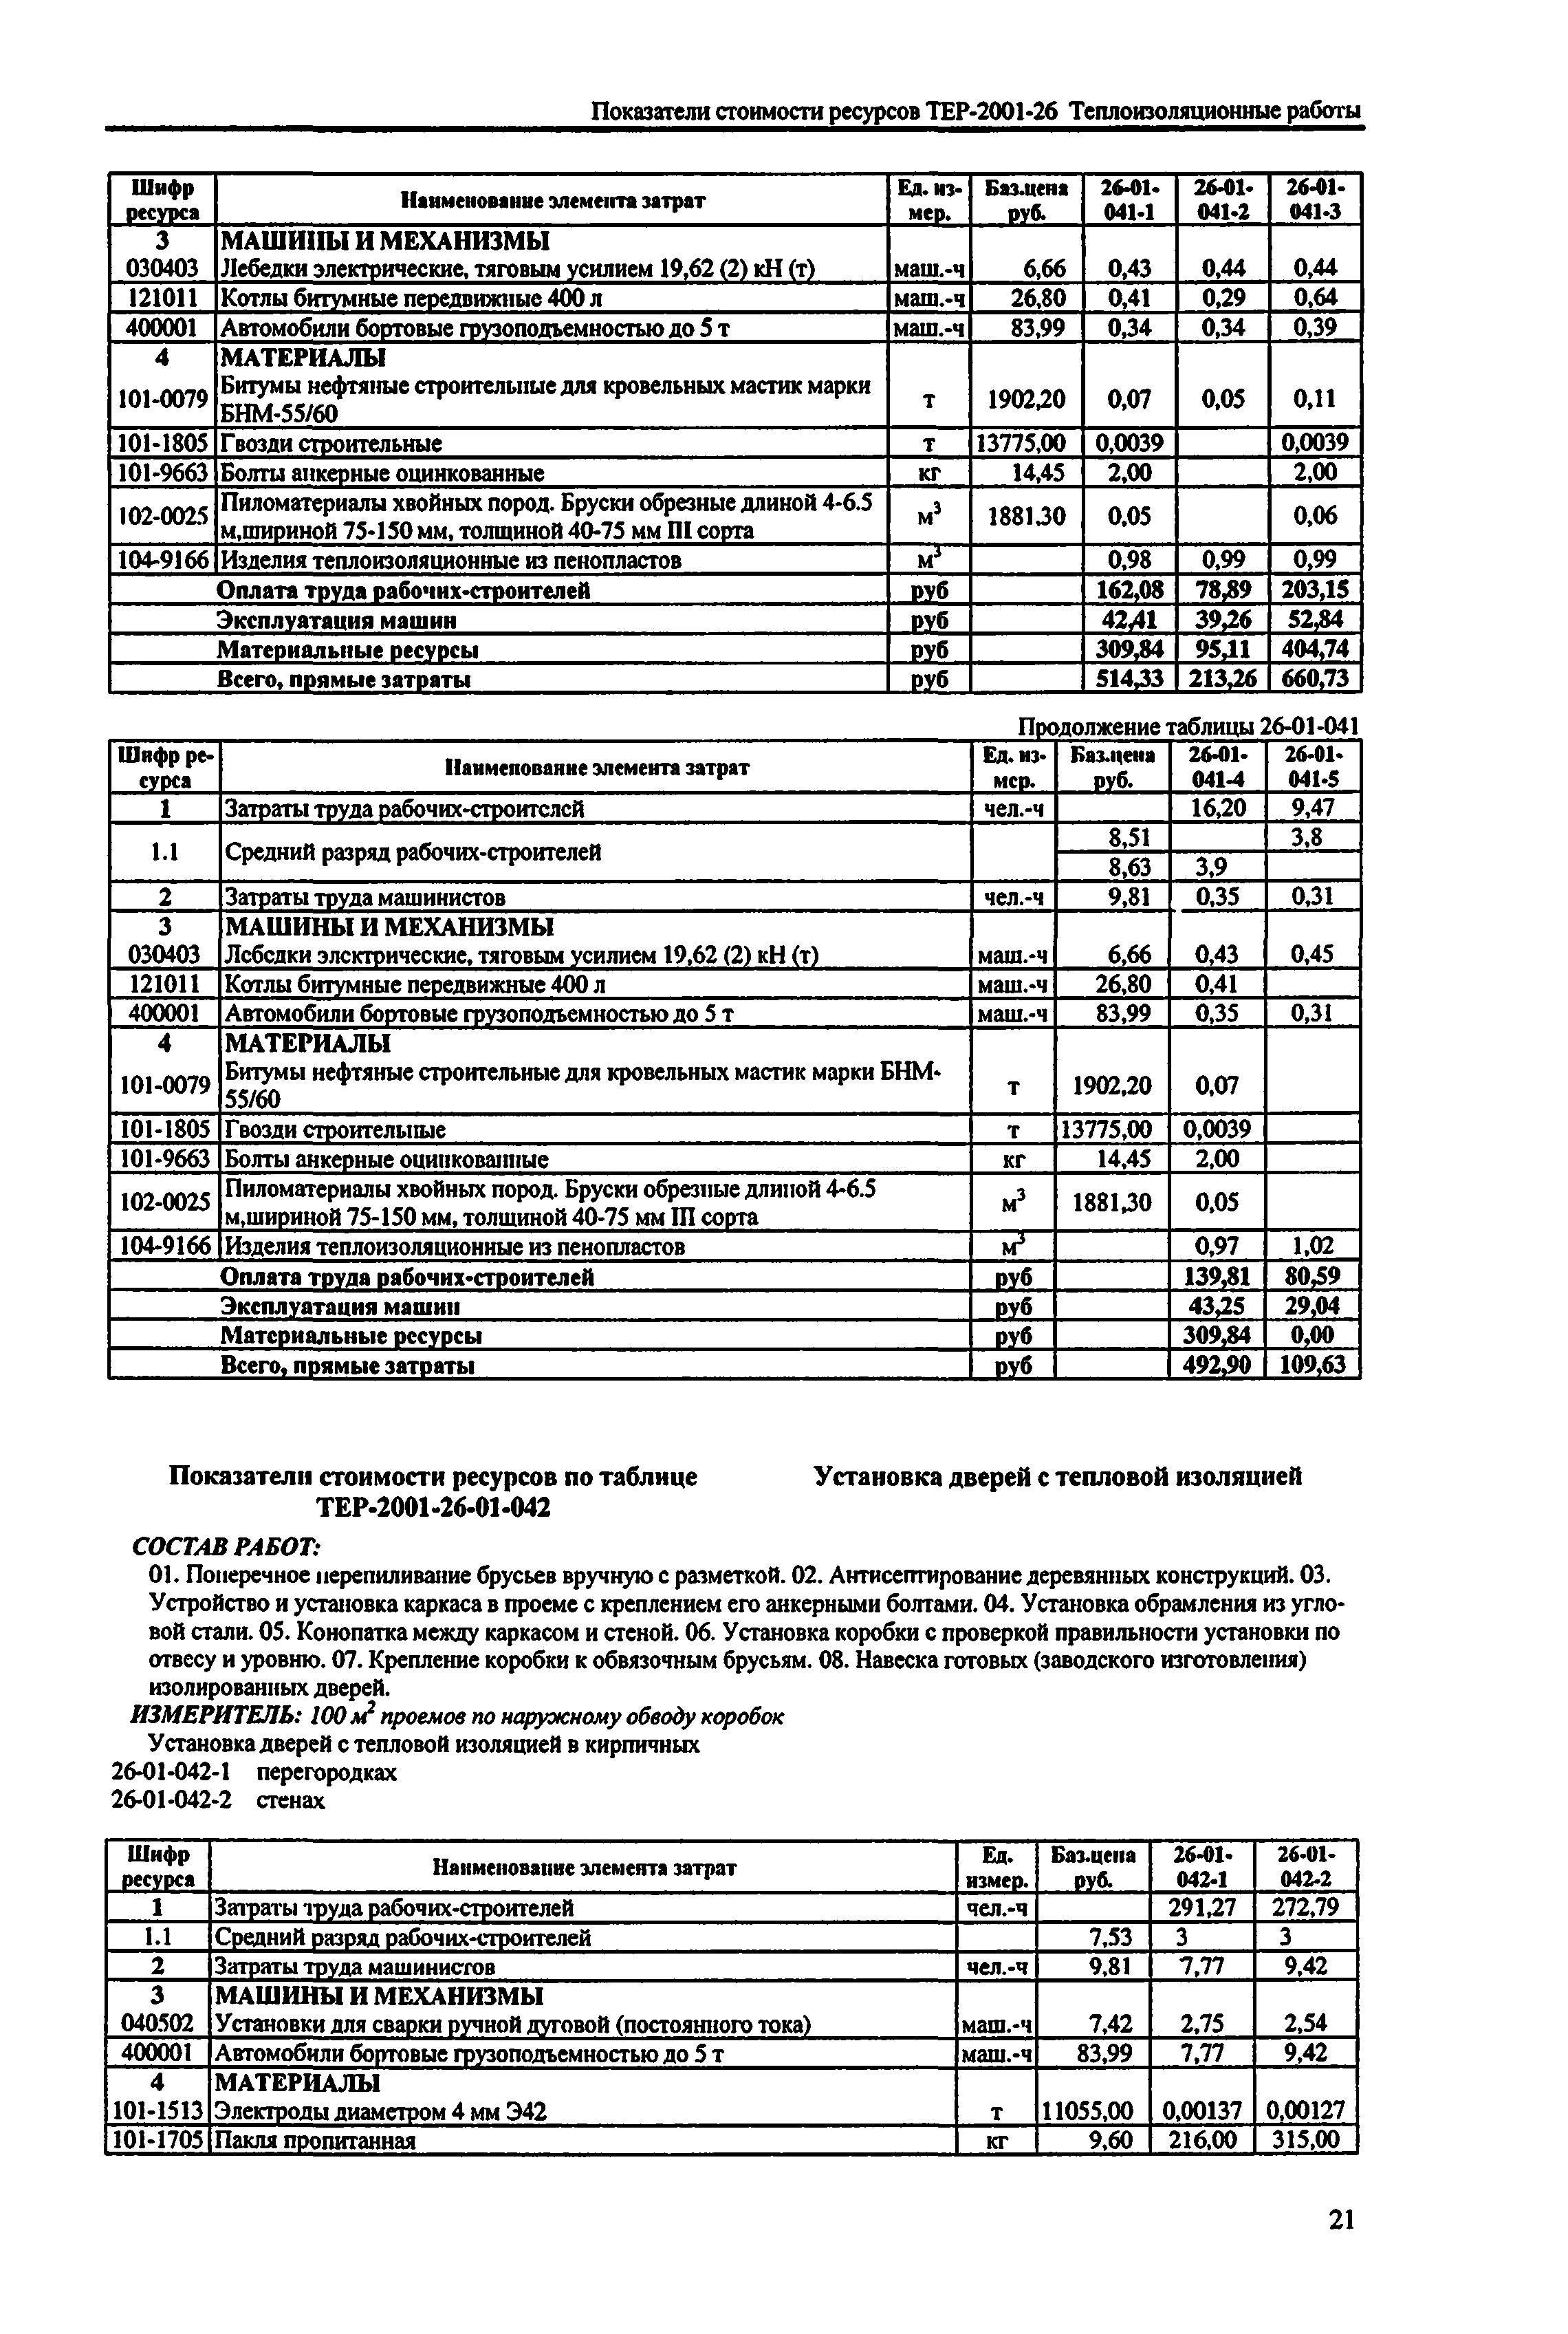 Справочное пособие к ТЕР 81-02-26-2001